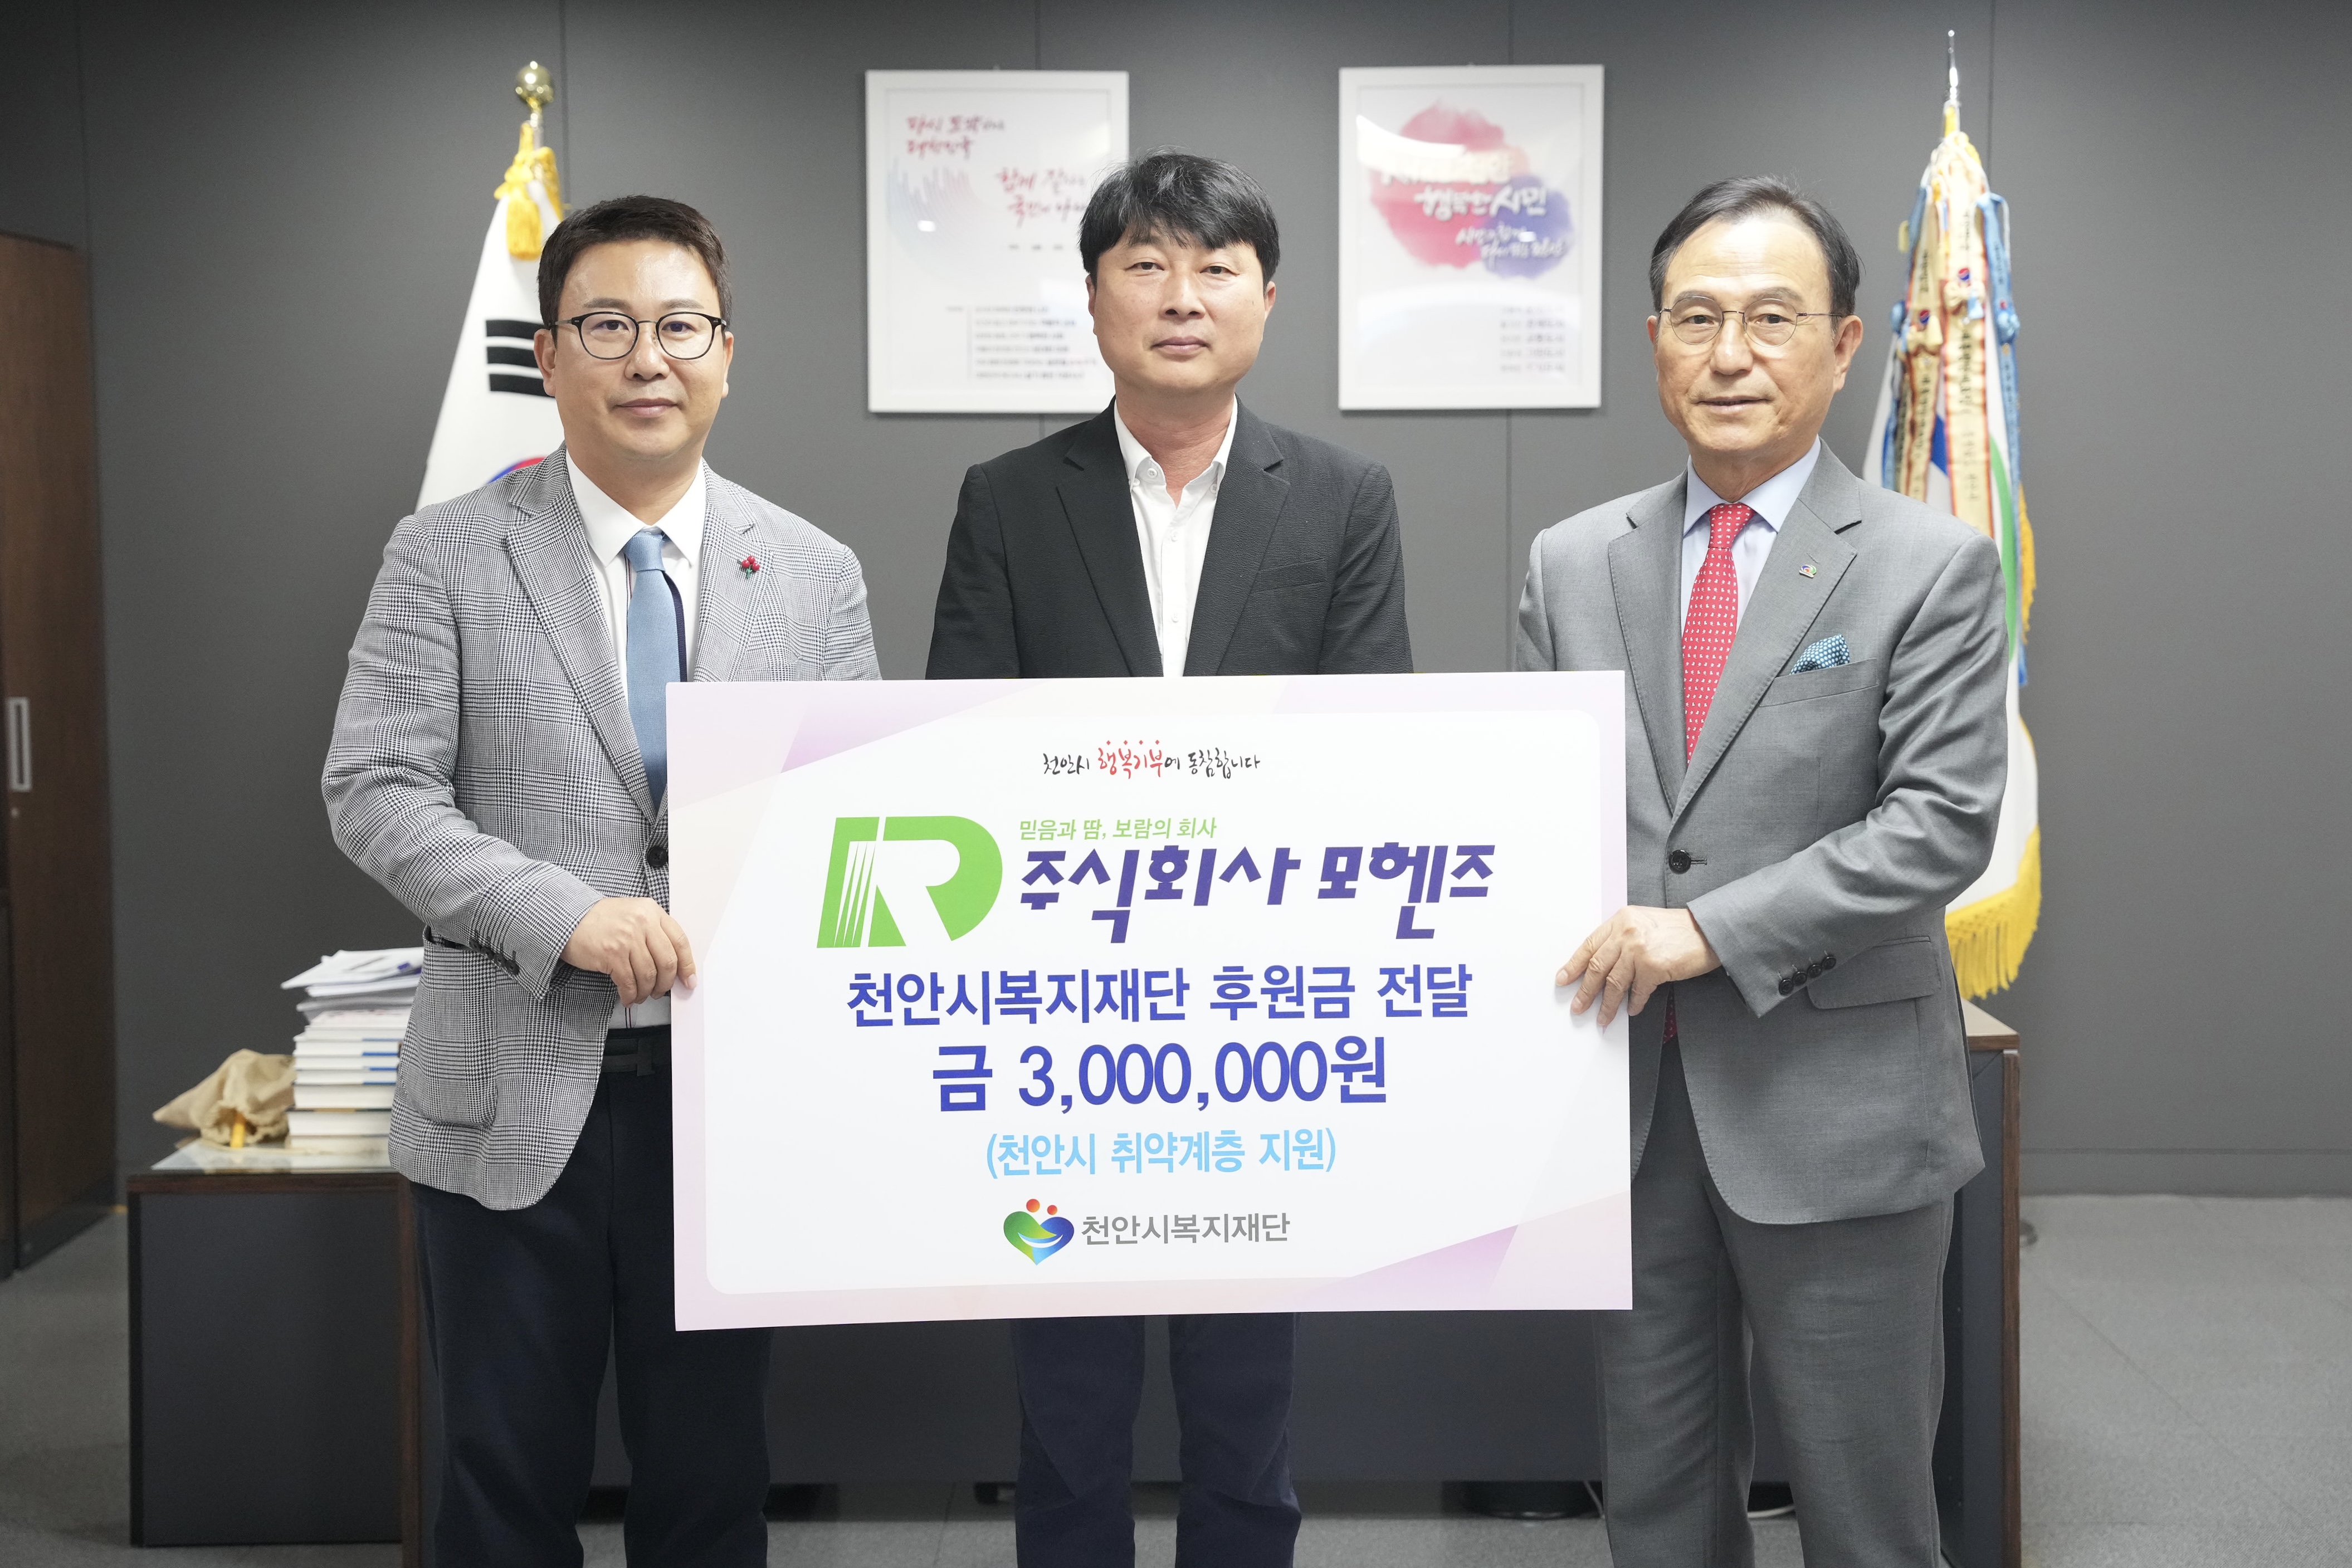 박상돈 시장은 21일 ㈜모헨즈(대표 김형민)가 천안시 취약계층 지원을 위해 사용해 달라며 후원금 300만 원을 천안시복지재단에 전달하는 자리에 참석했다.